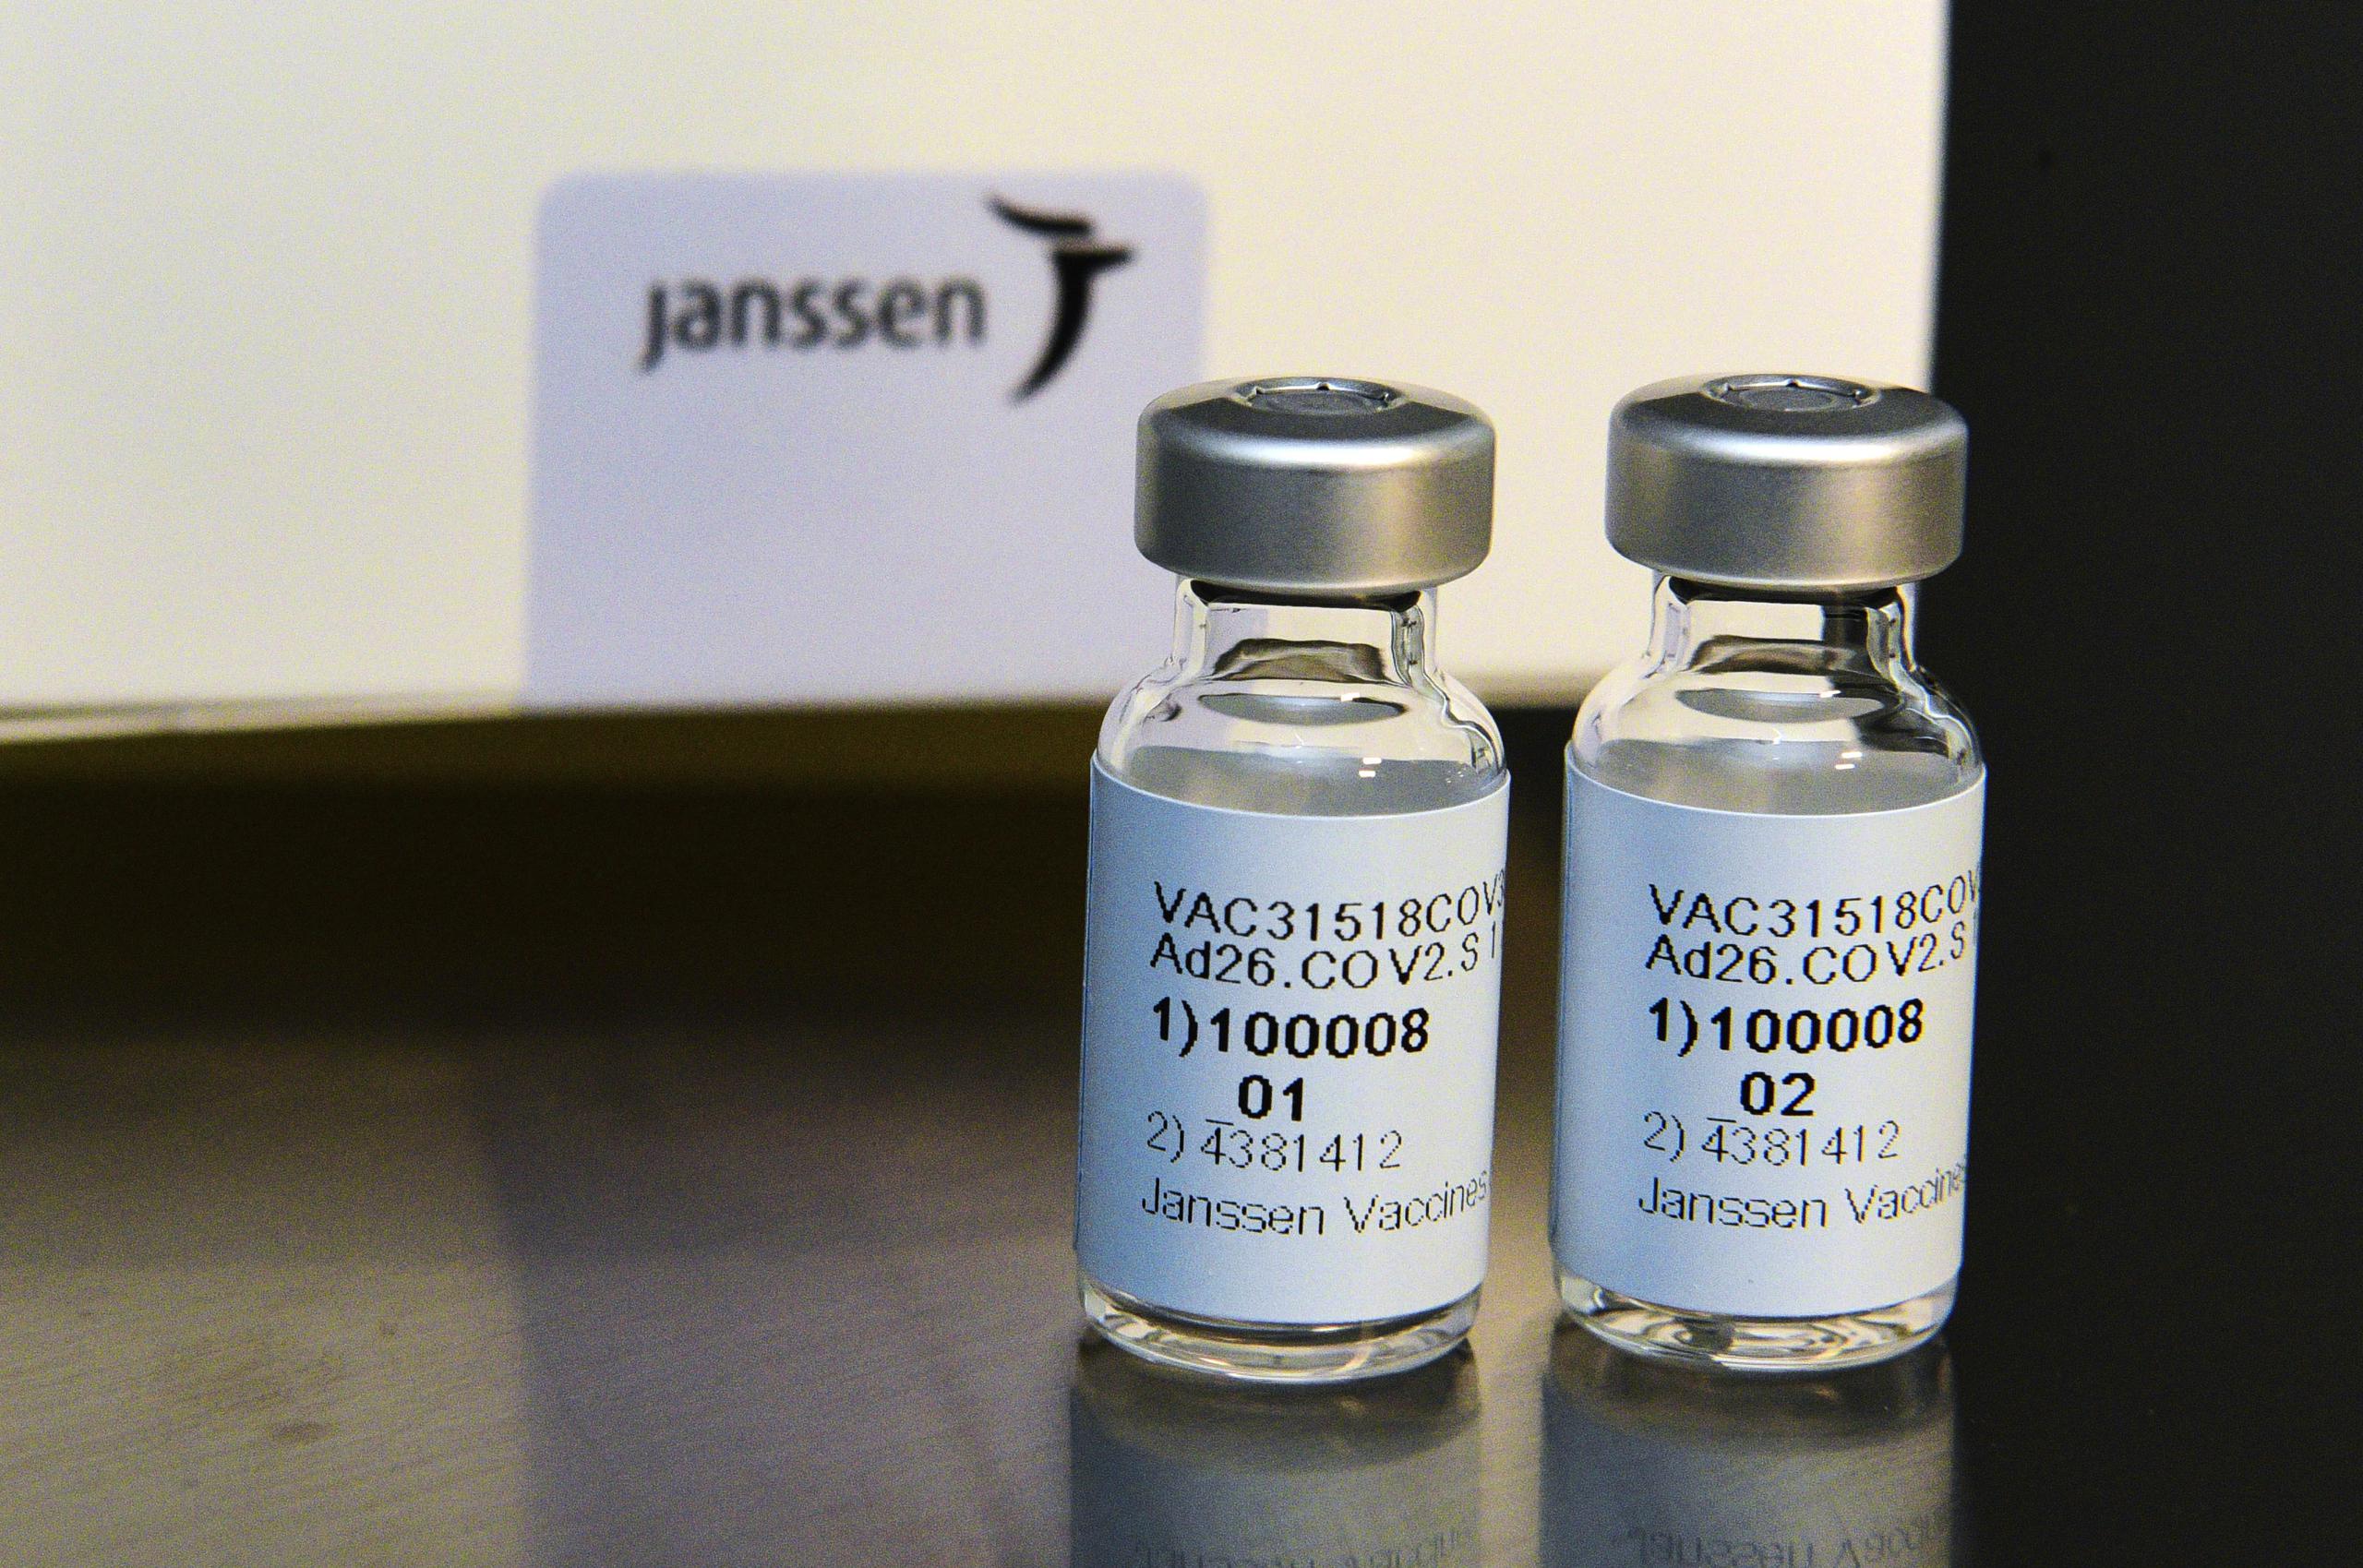 A mediados de marzo, en unas instalaciones de la firma Emergent BioSolutions, se mezclaron "accidentalmente" ingredientes de la vacuna de Johnson & Johnson y AstraZeneca.